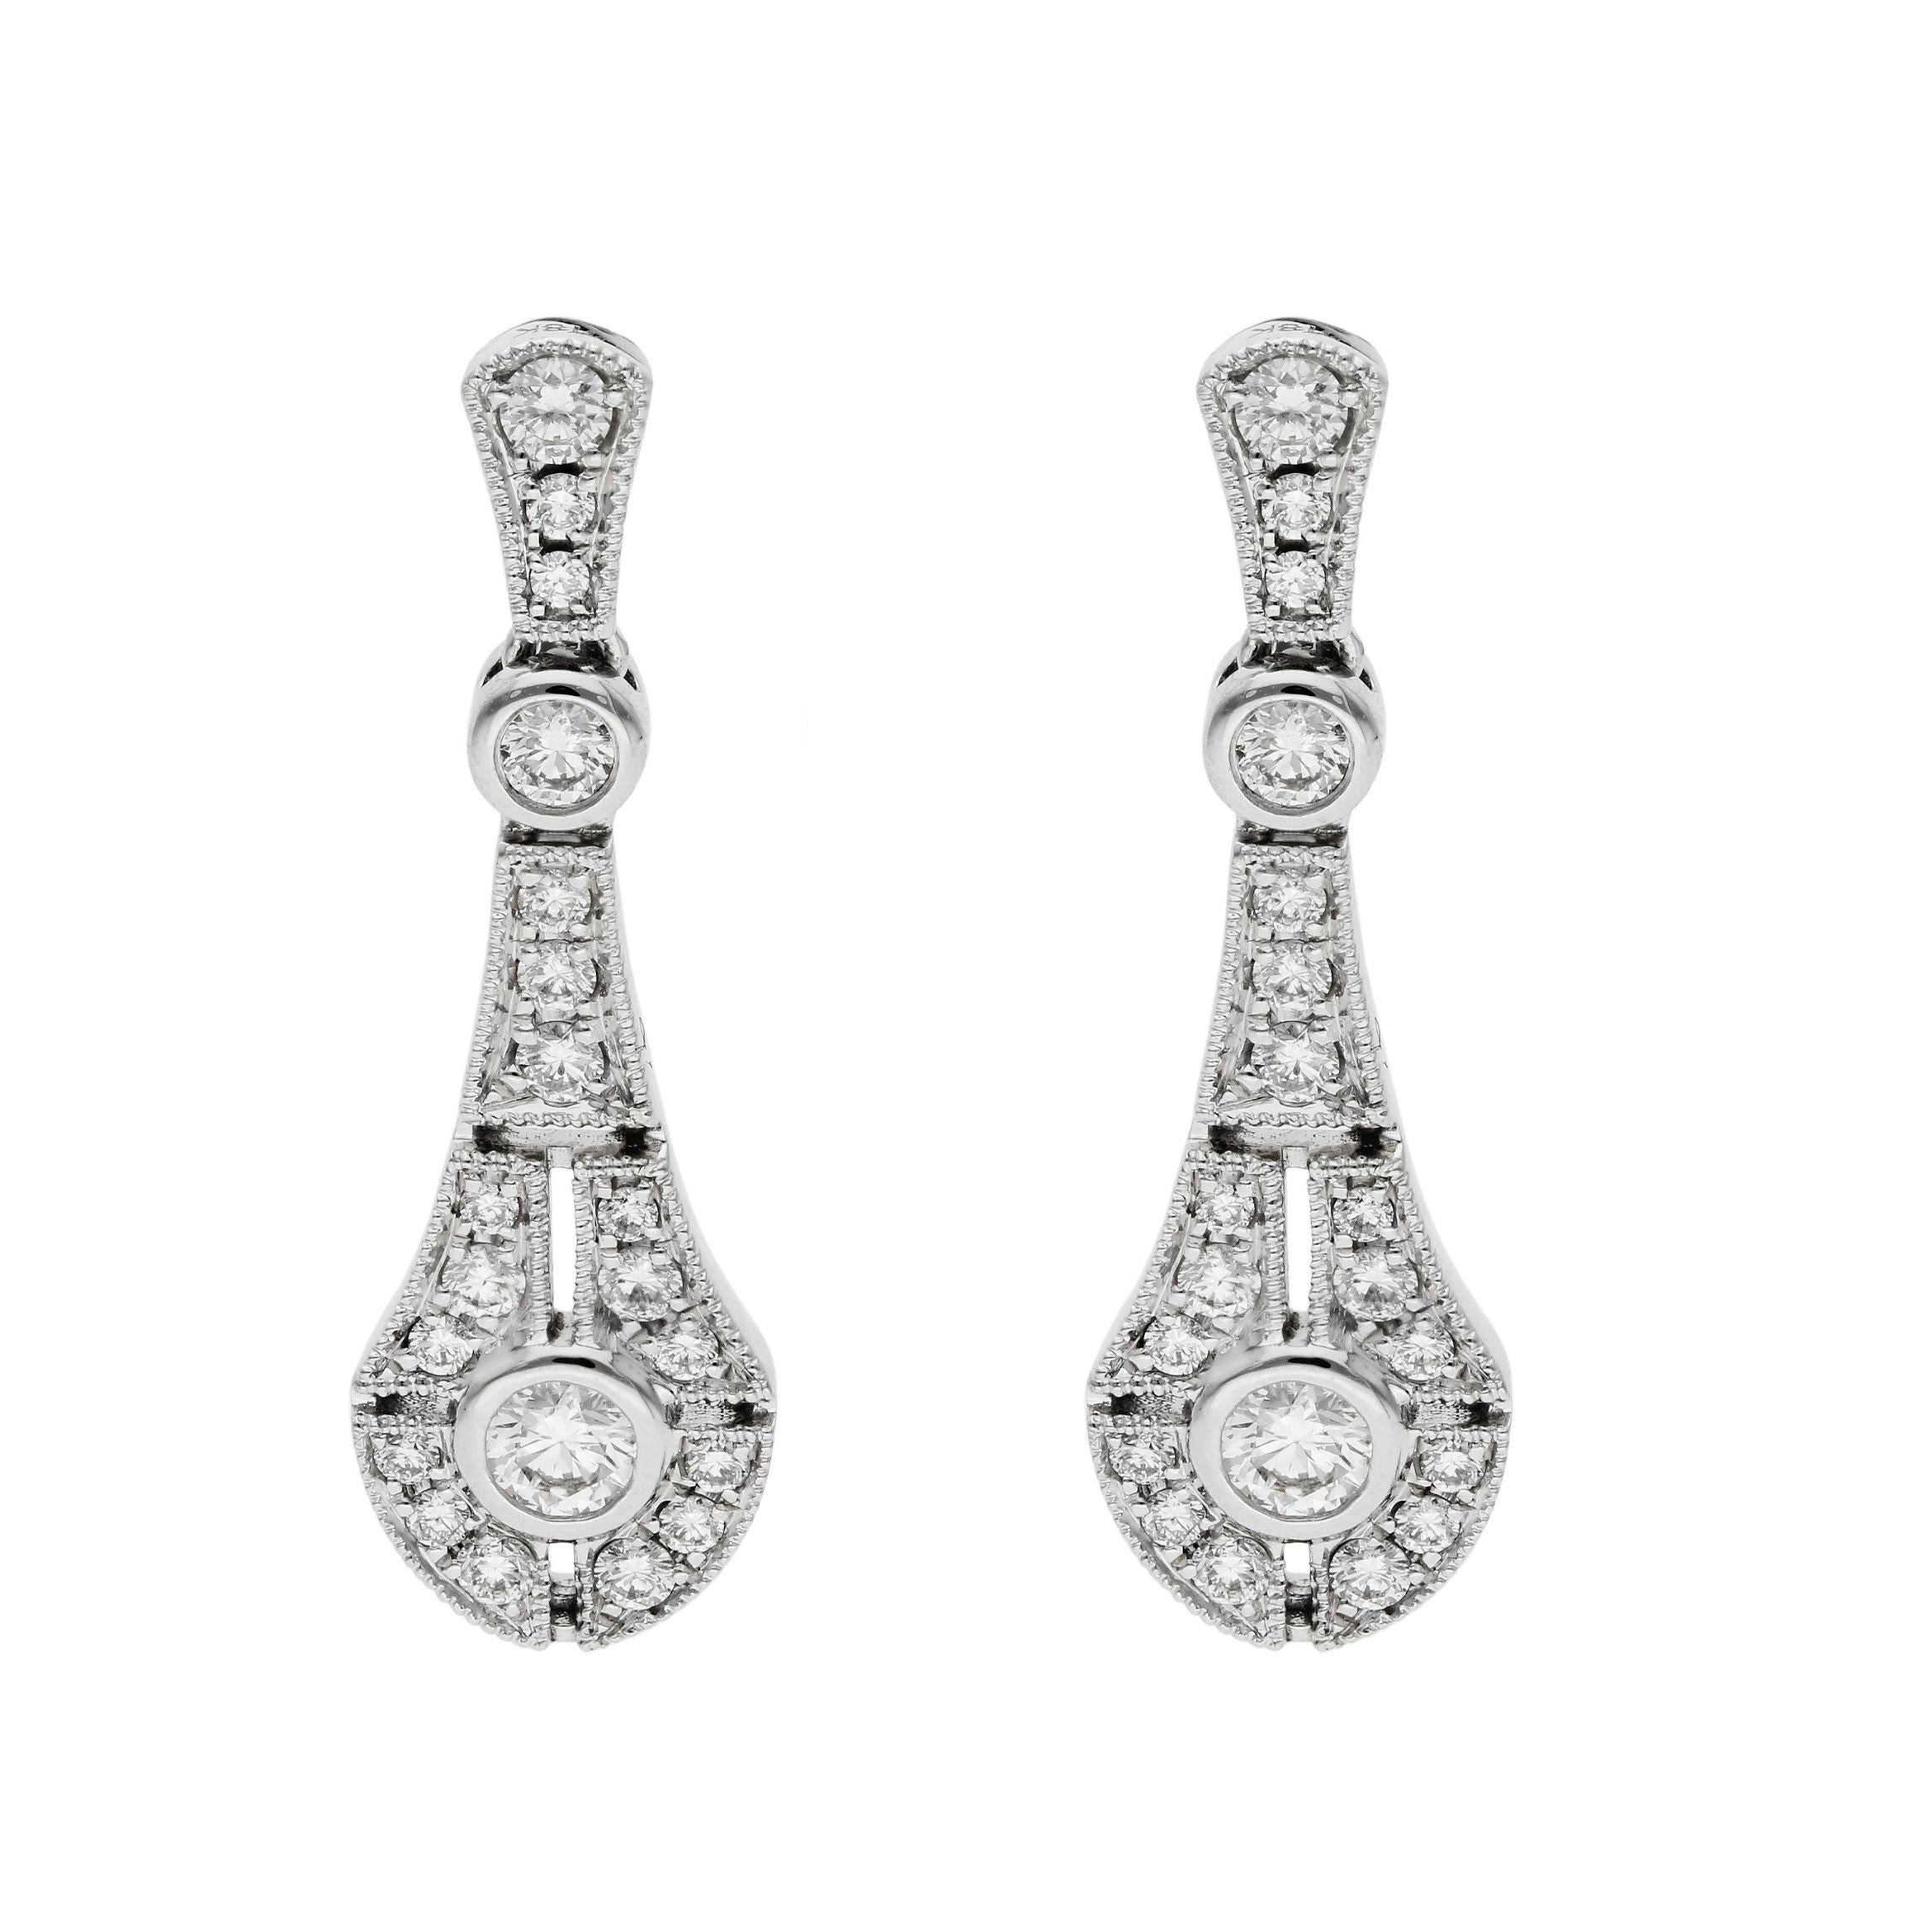 Diese majestätischen Tropfenohrringe für Damen sind von den wilden 1920er Jahren inspiriert. Ein erstaunliches und opulentes Paar Diamant-Ohrringe. Das perfekte Geschenk für ein diamantenes Jubiläum, einen Geburtstag im April oder einfach nur